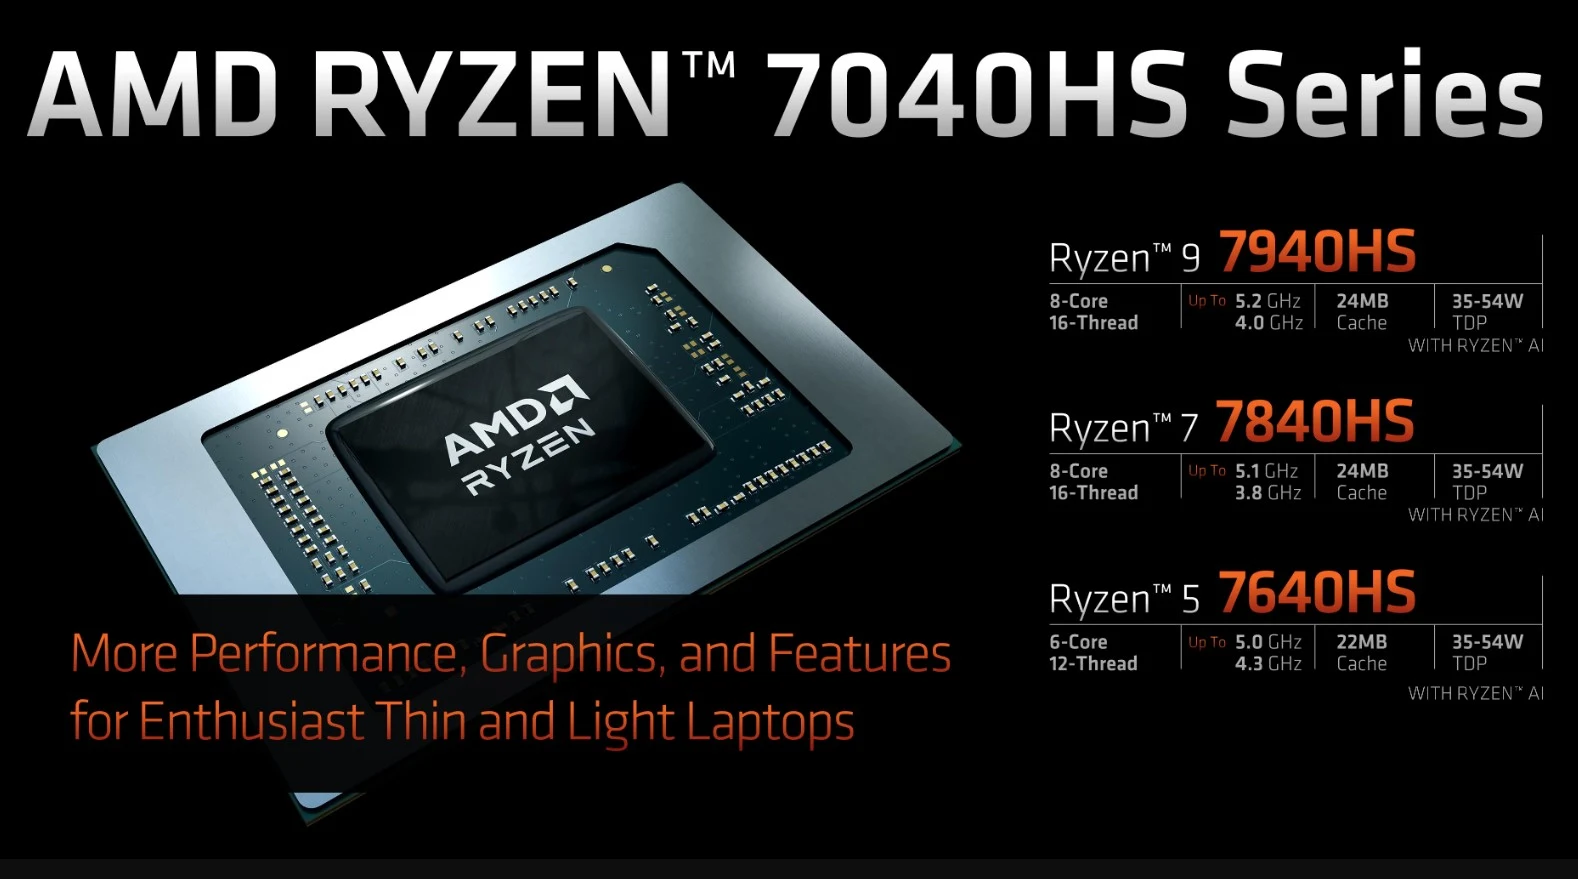 Prosesor AMD Ryzen 7000 Series untuk Laptop Resmi Diluncurkan di Indonesia